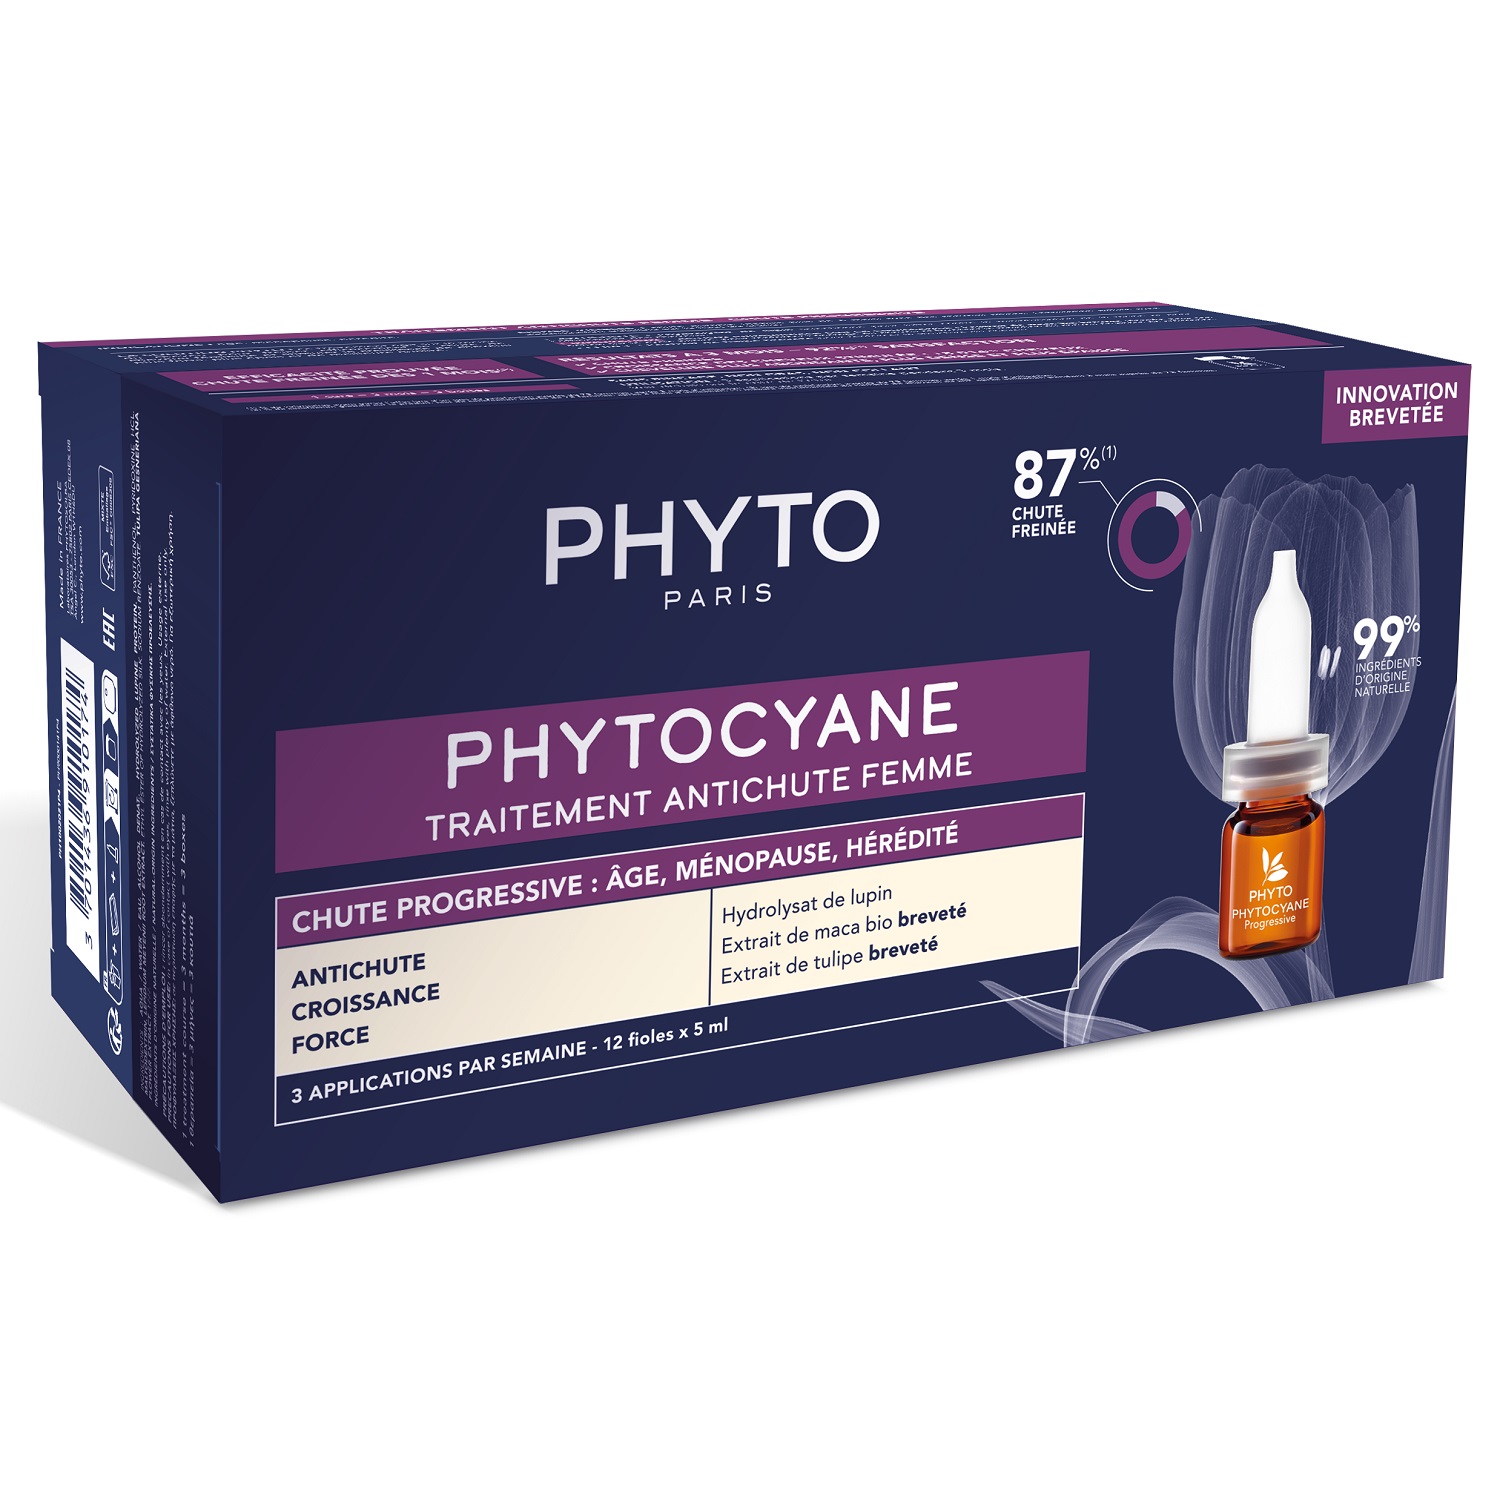 Phyto Сыворотка против выпадения волос для женщин, 12 флаконов х 5 мл (Phyto, Phytocyane) phyto набор для мужчин сыворотка от выпадения волос 12х3 5 мл шампунь 100 мл phyto phytocyane